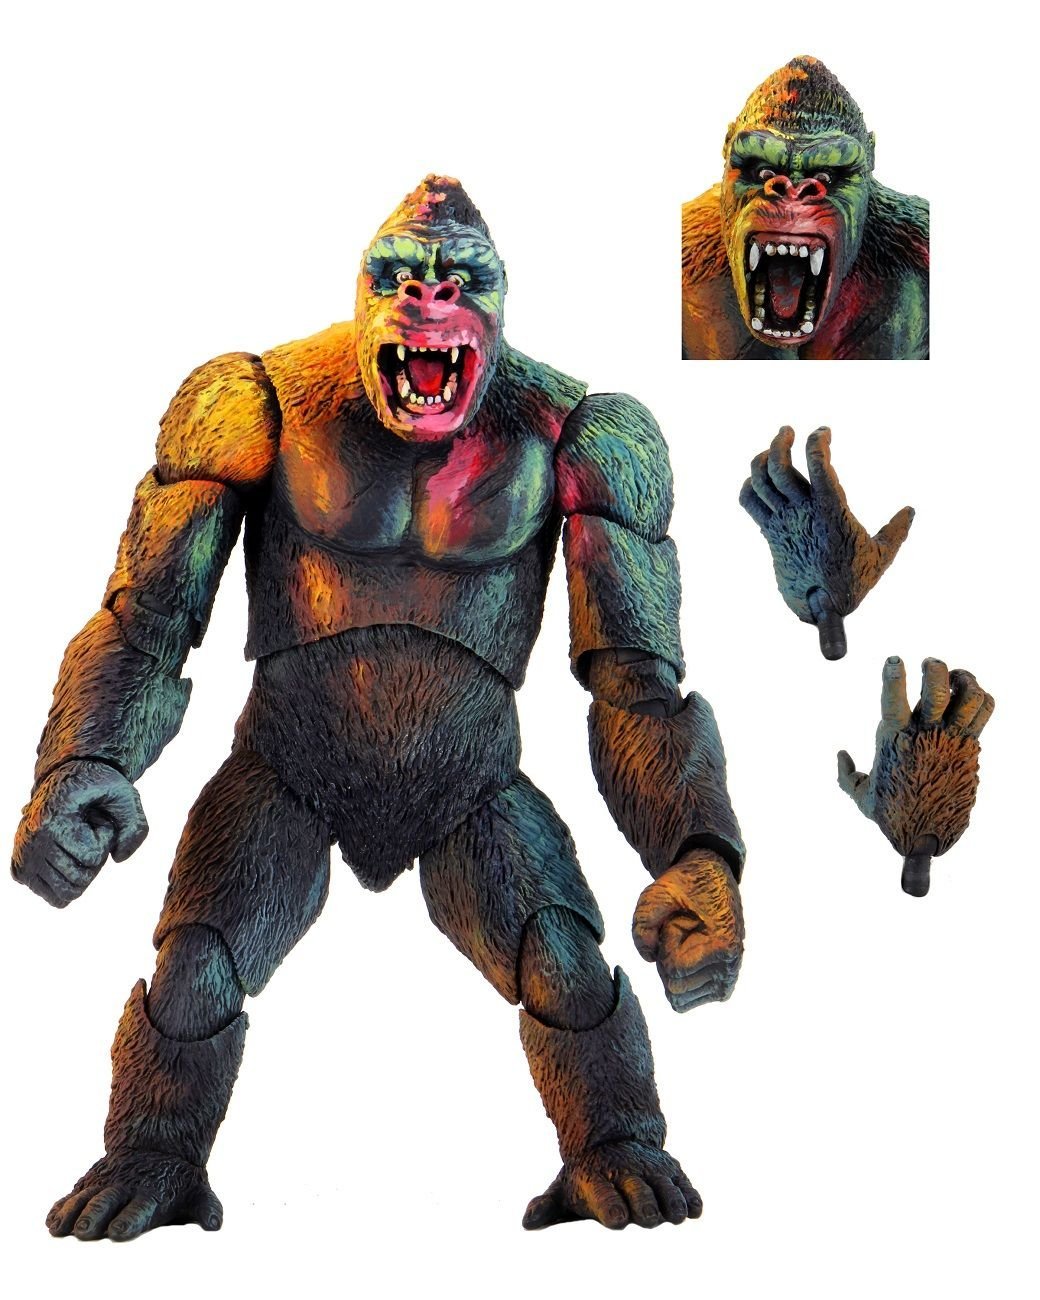 King Kong – Ultimate King Kong (Illustrated) Figure